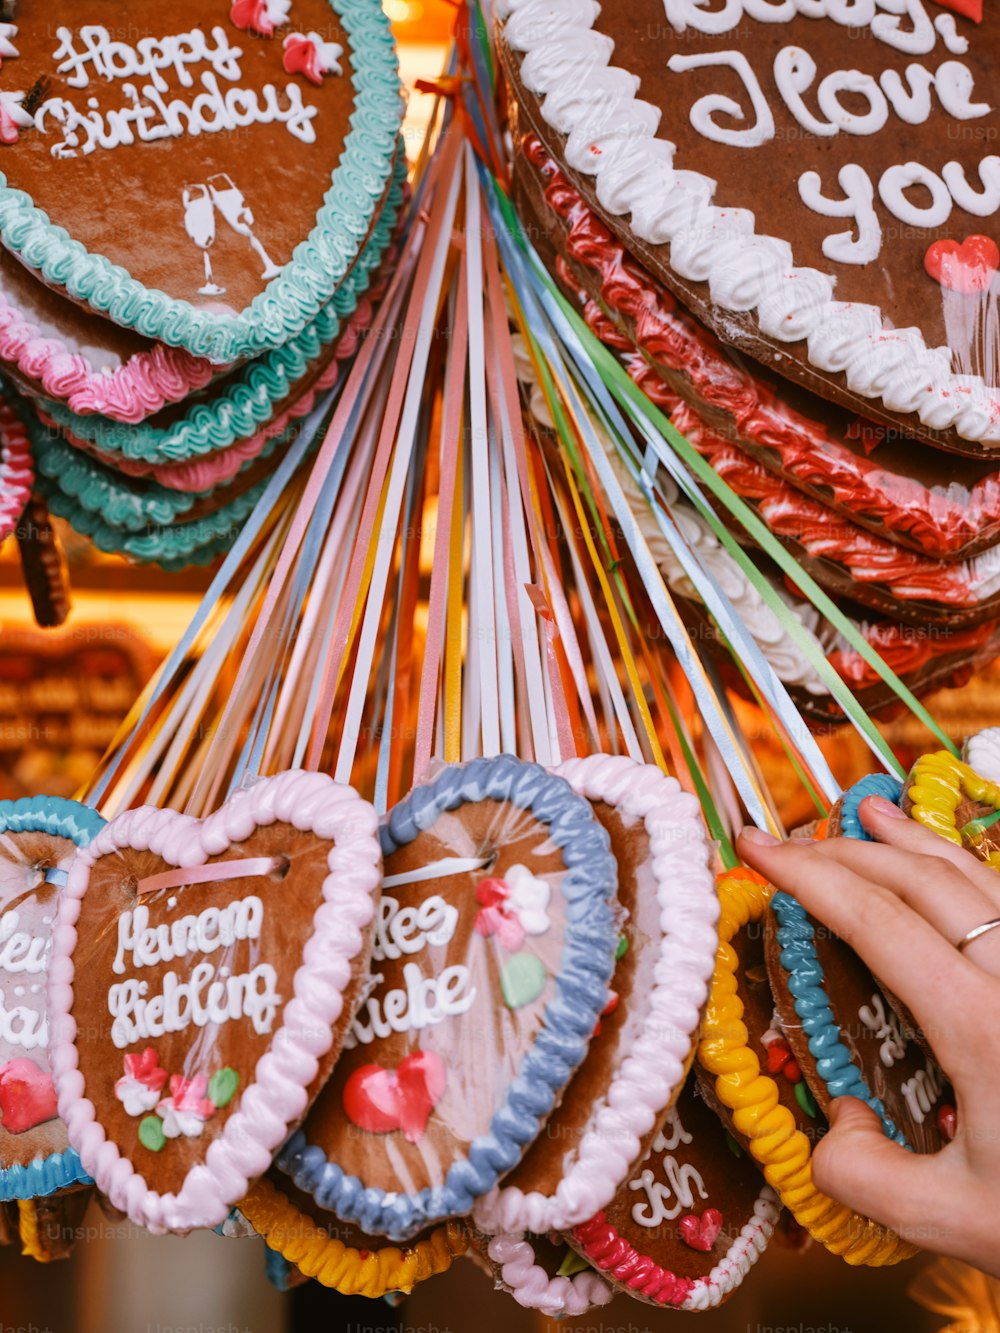 una persona sosteniendo un montón de galletas en forma de corazón